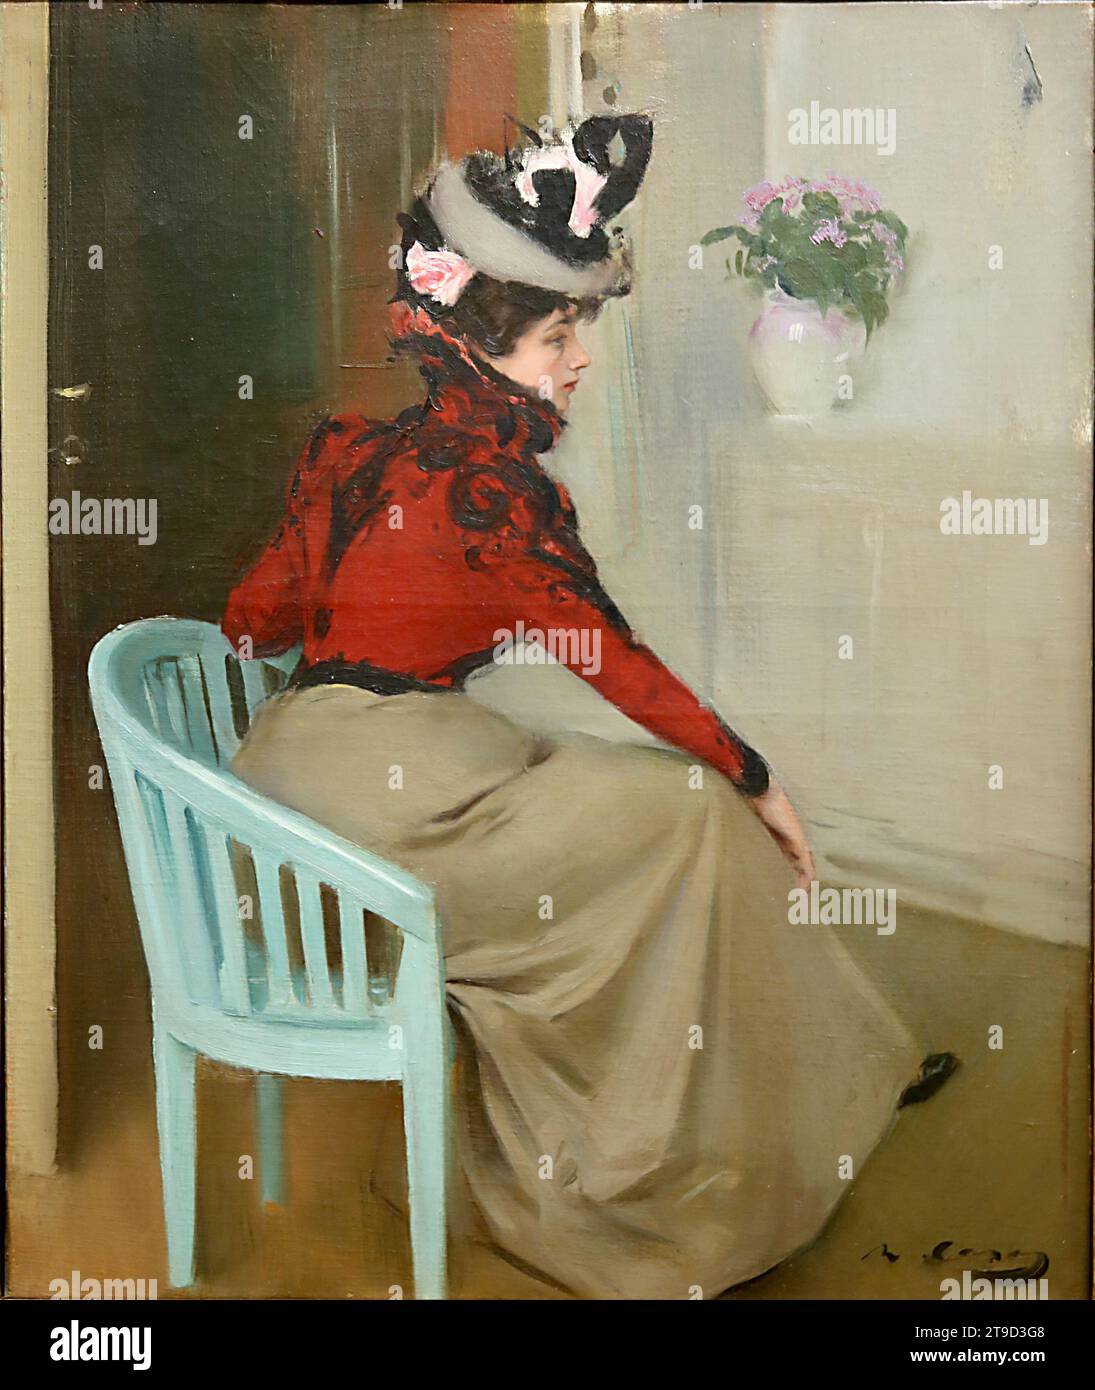 La parisienne. 1900, huile sur toile de Ramon Casas (1866-1932). Portrait d'une jeune femme. Musée de Montserrat. Catalogne. Espagne. Banque D'Images